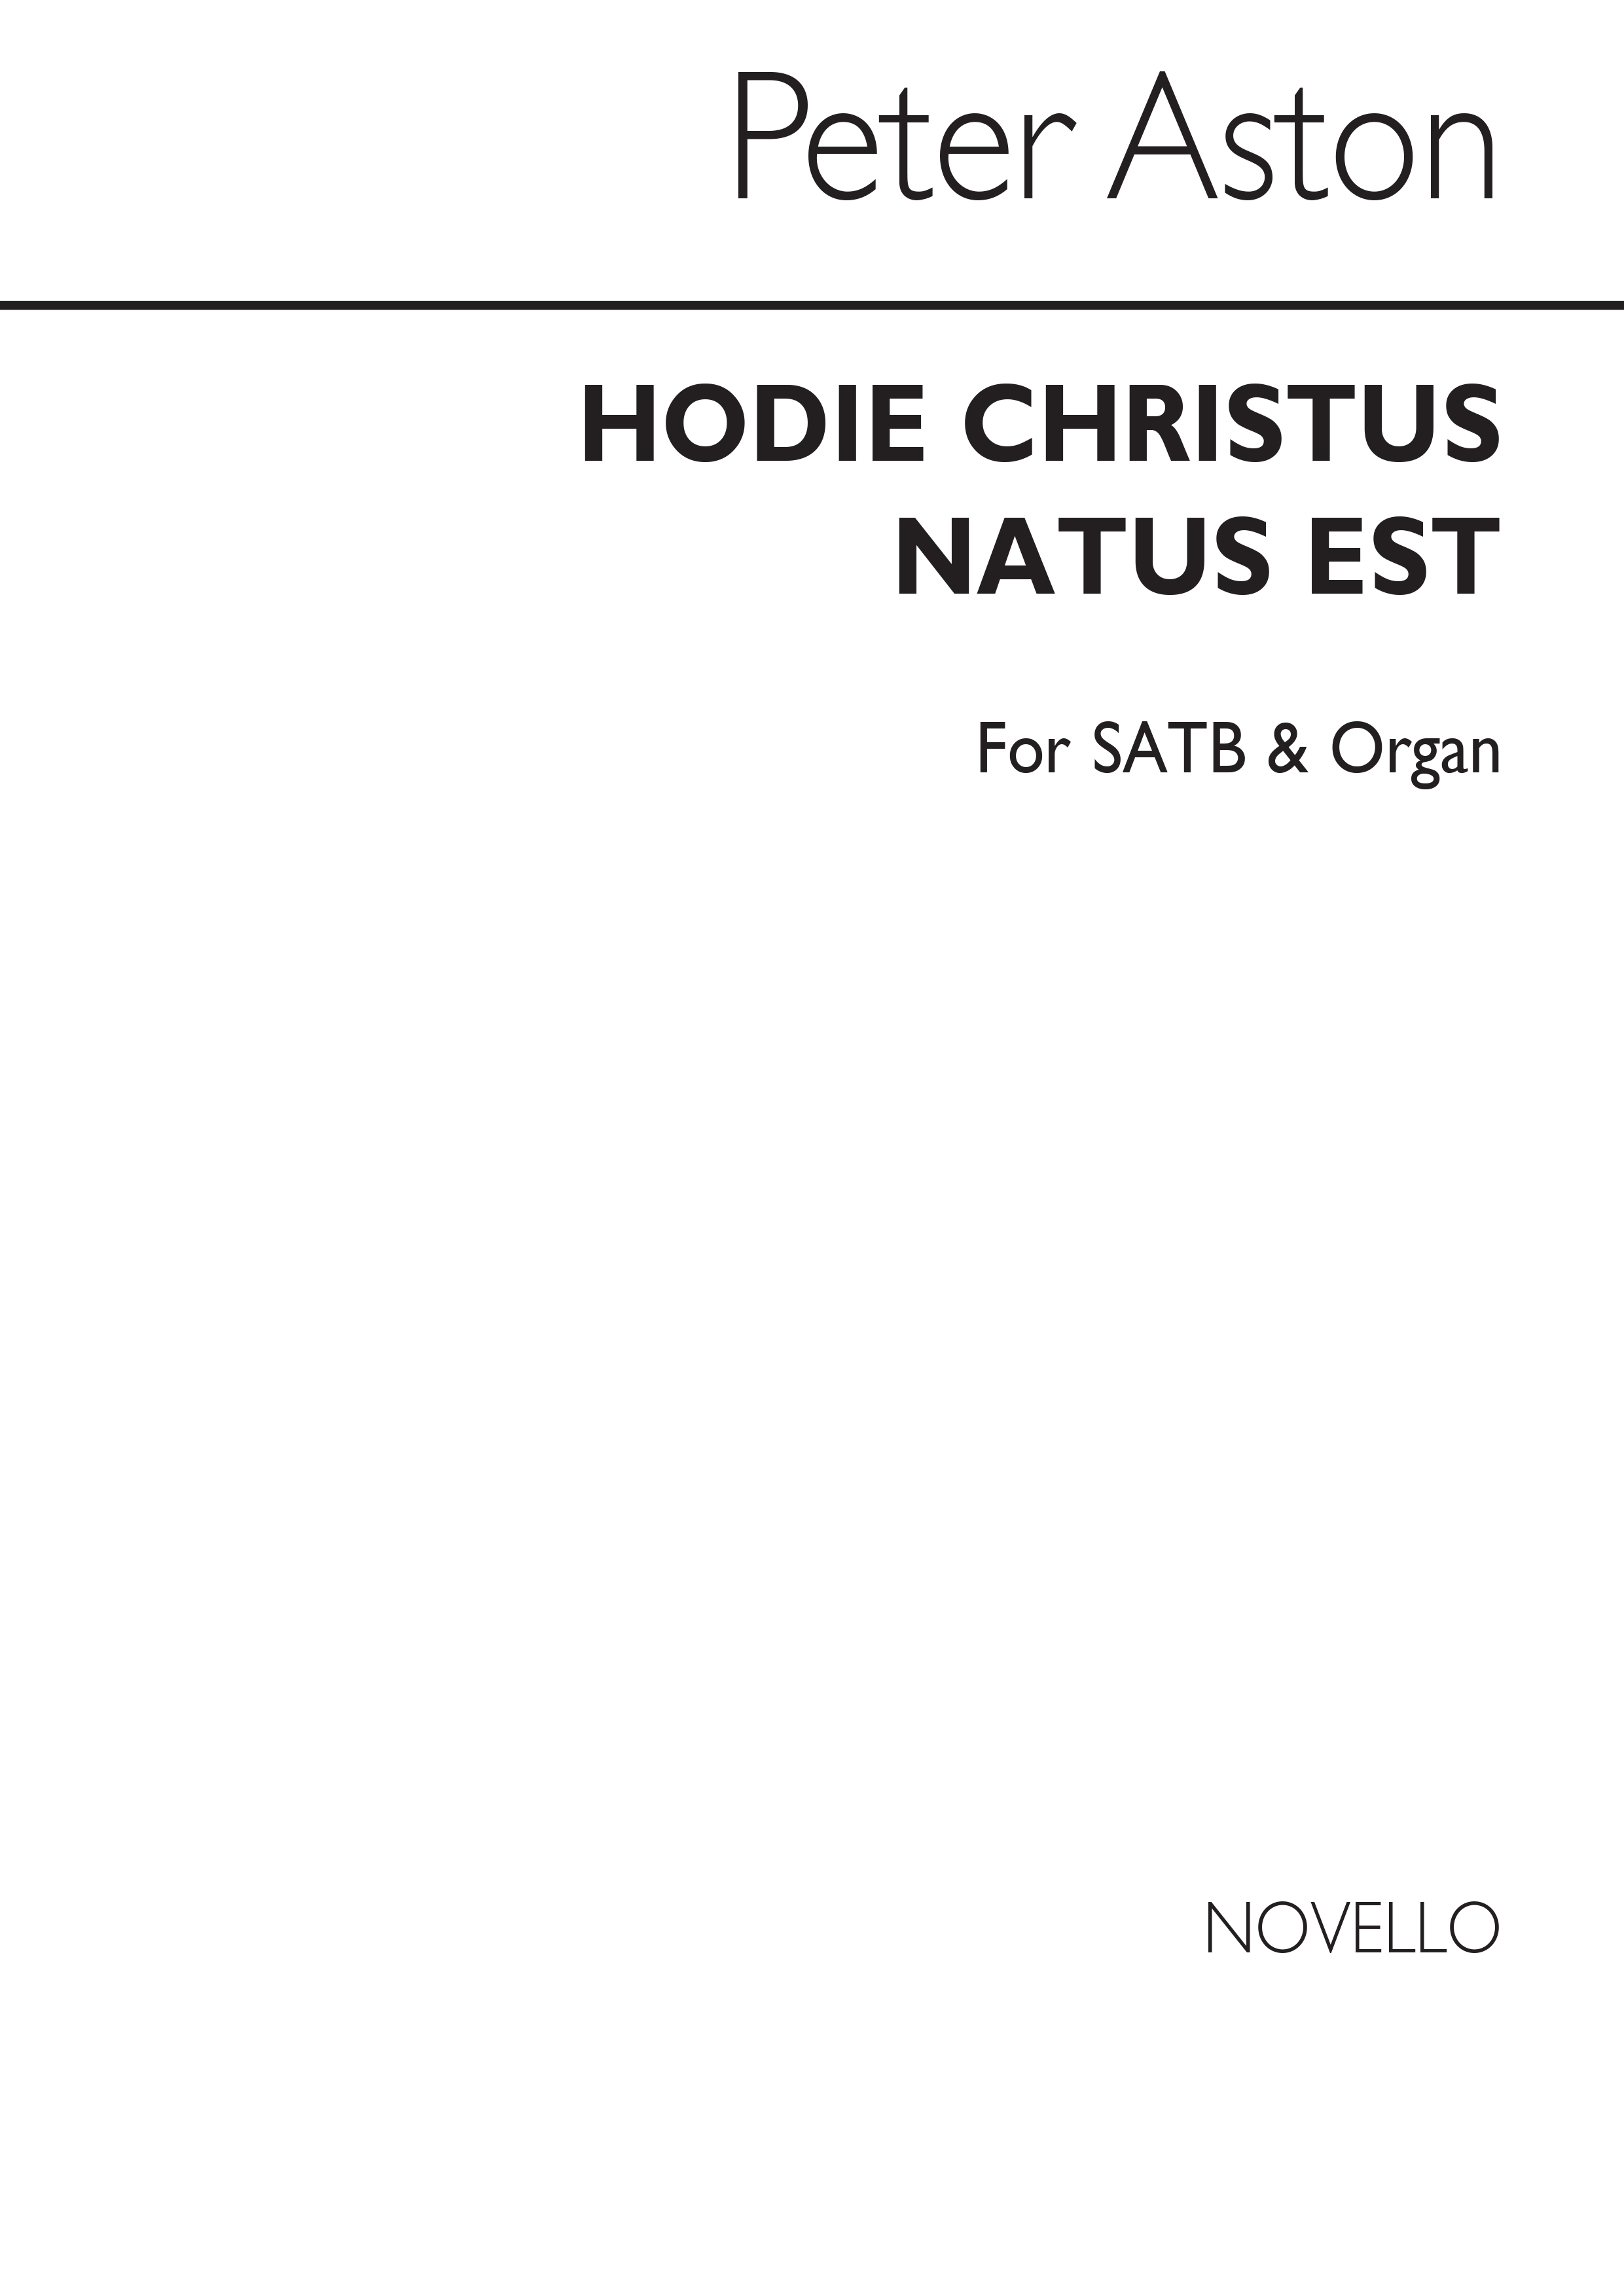 Peter Aston: Hodie Christus Natus Est for SATB Chorus